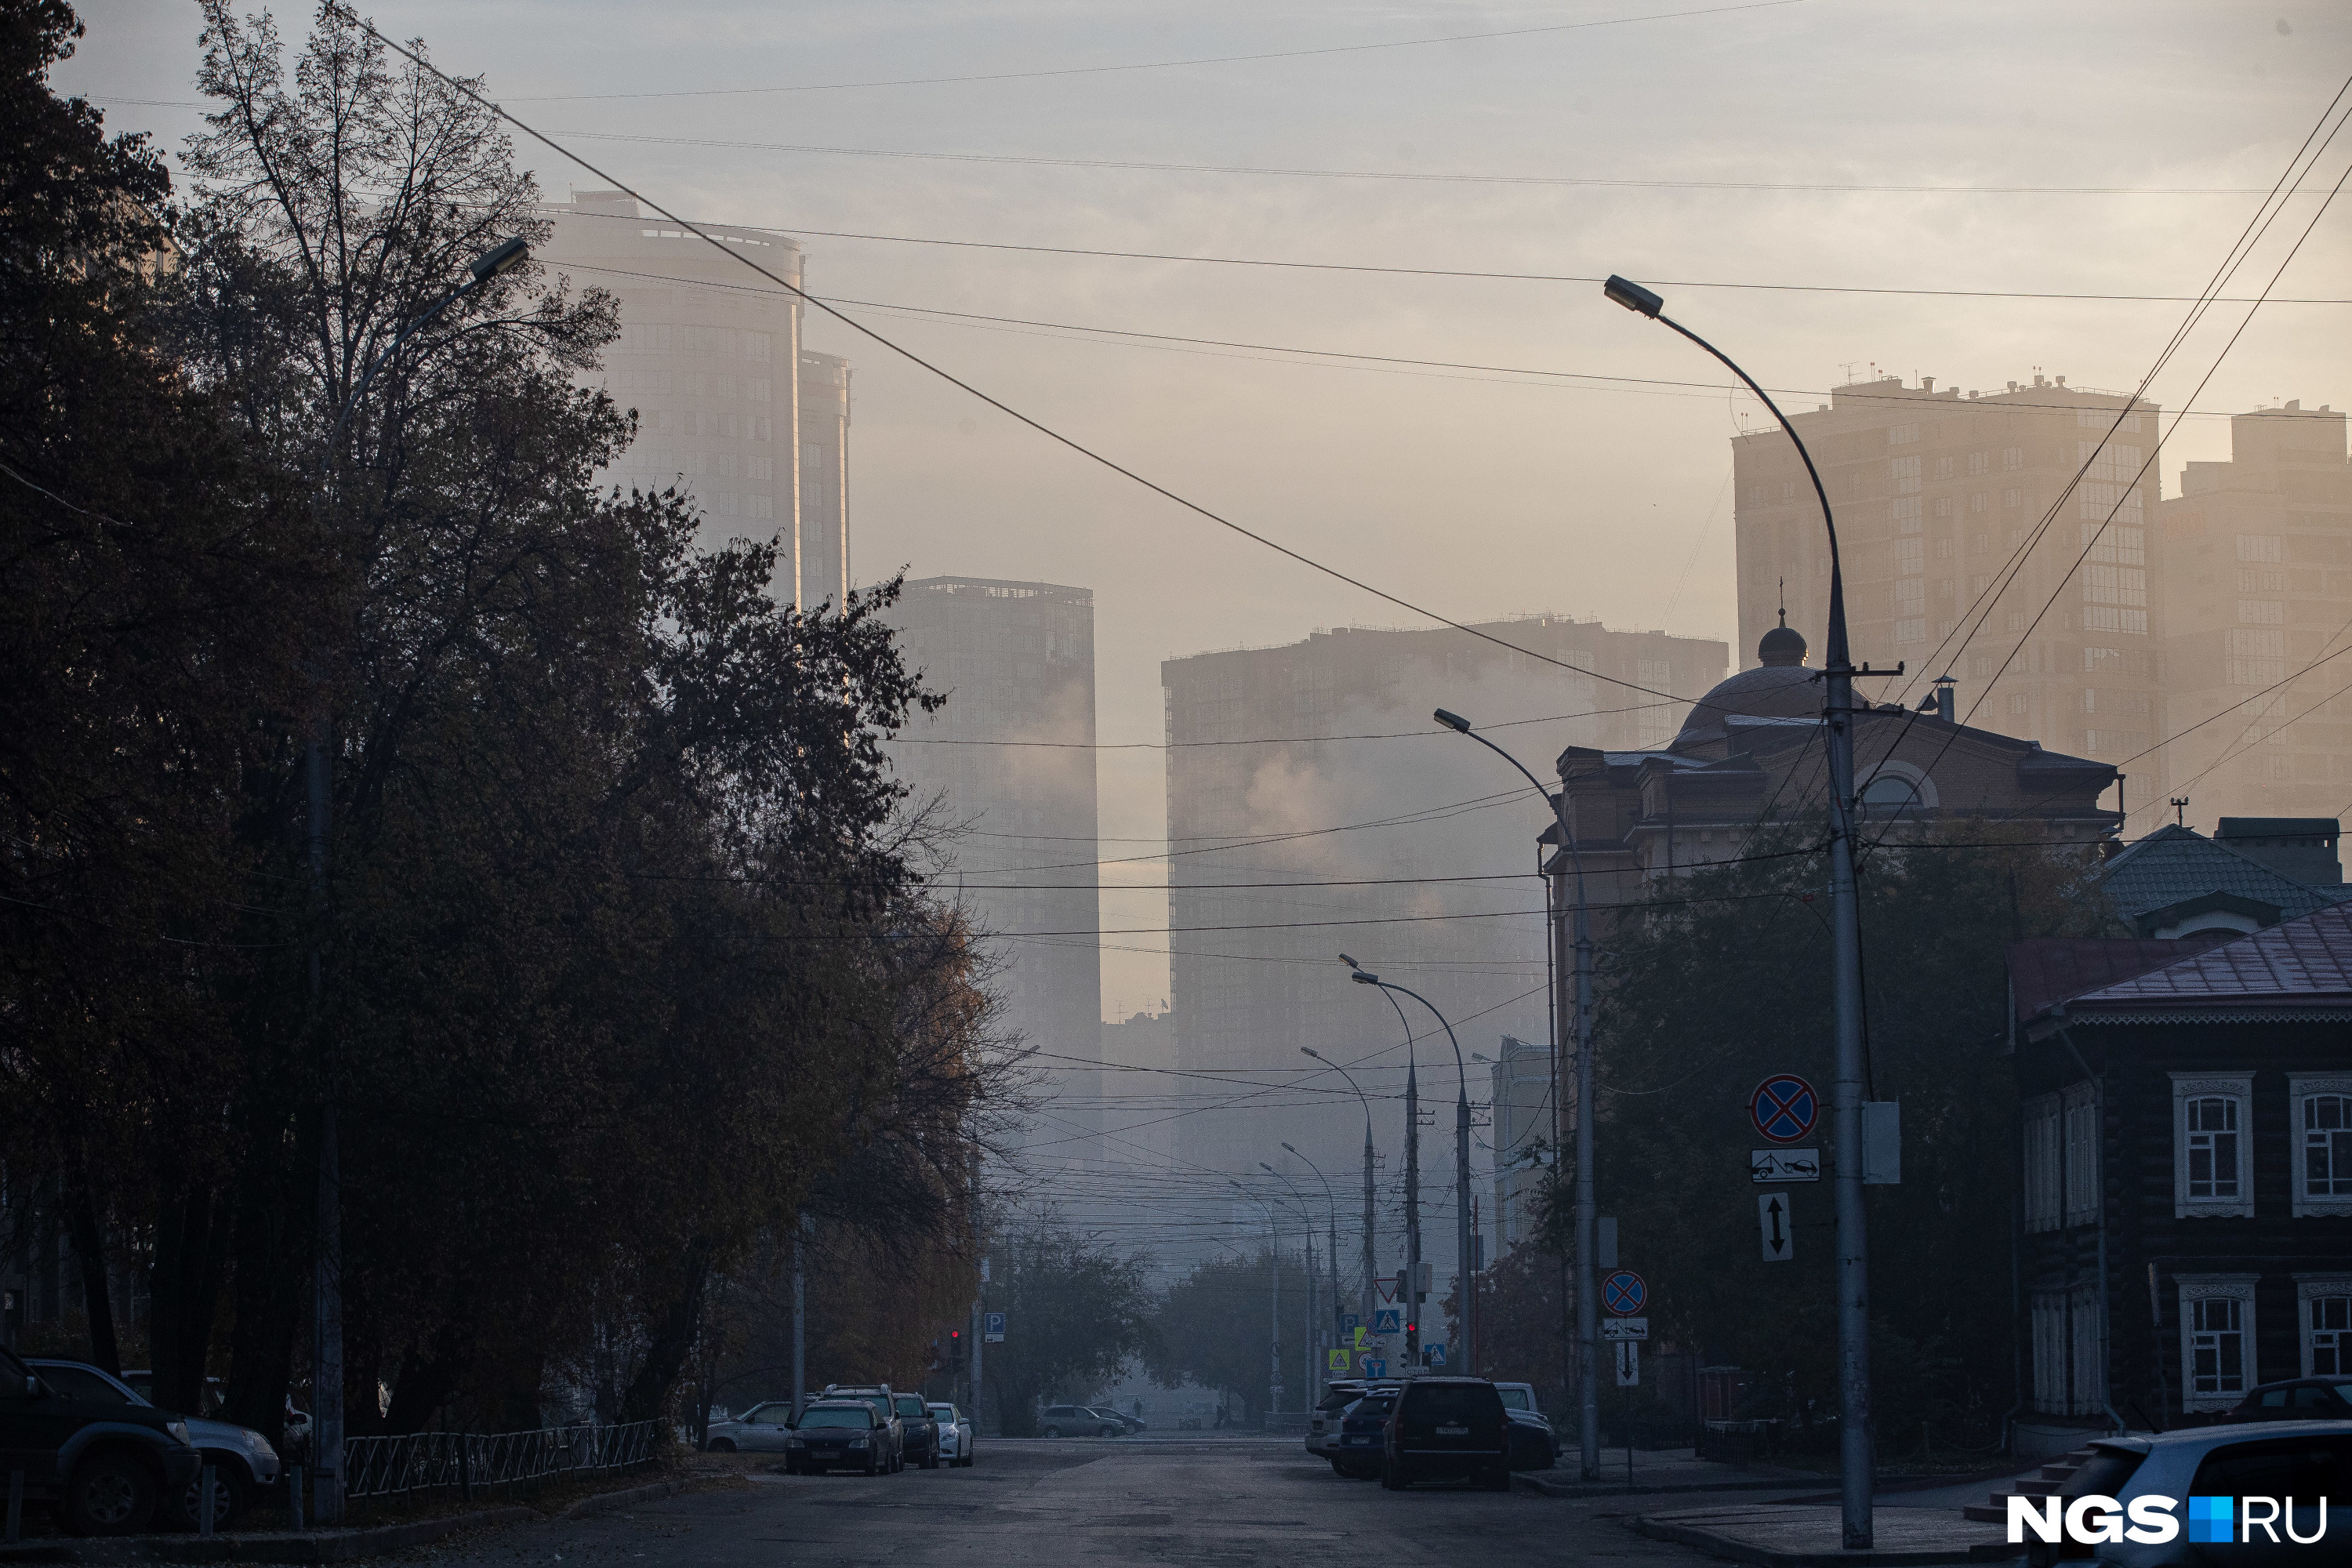 Помимо тумана в Новосибирске наблюдается и повышенный уровень загрязнения воздуха: ветра-то совсем нет